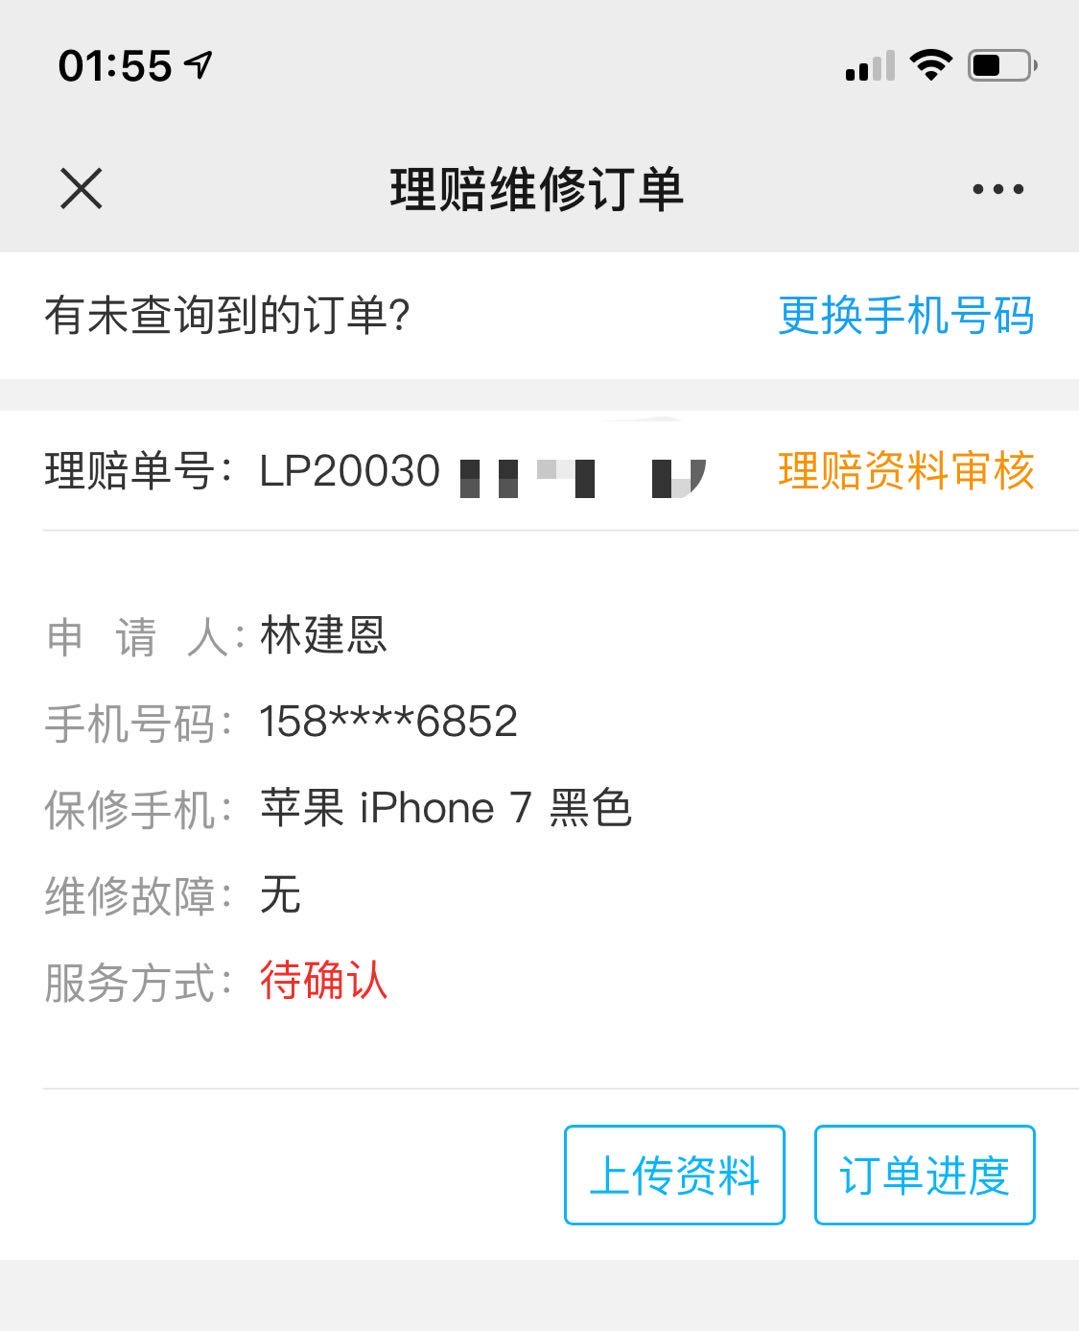 林建恩网友-你的苹果7黑色没通过碎屏险-发我这来了-惠小助(52huixz.com)